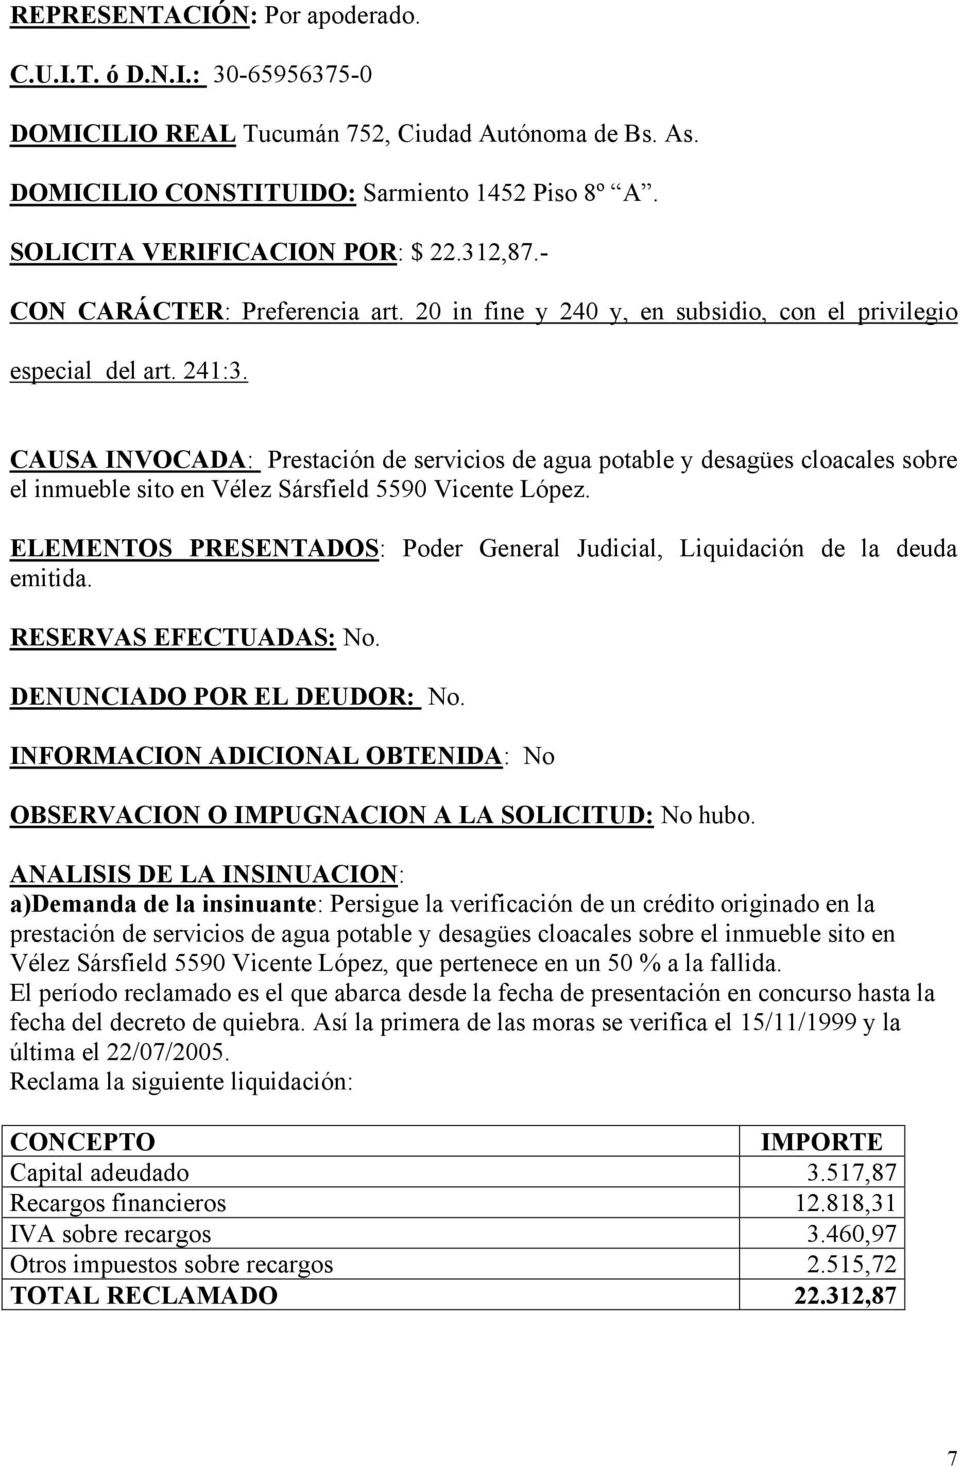 CAUSA INVOCADA: Prestación de servicios de agua potable y desagües cloacales sobre el inmueble sito en Vélez Sársfield 5590 Vicente López.